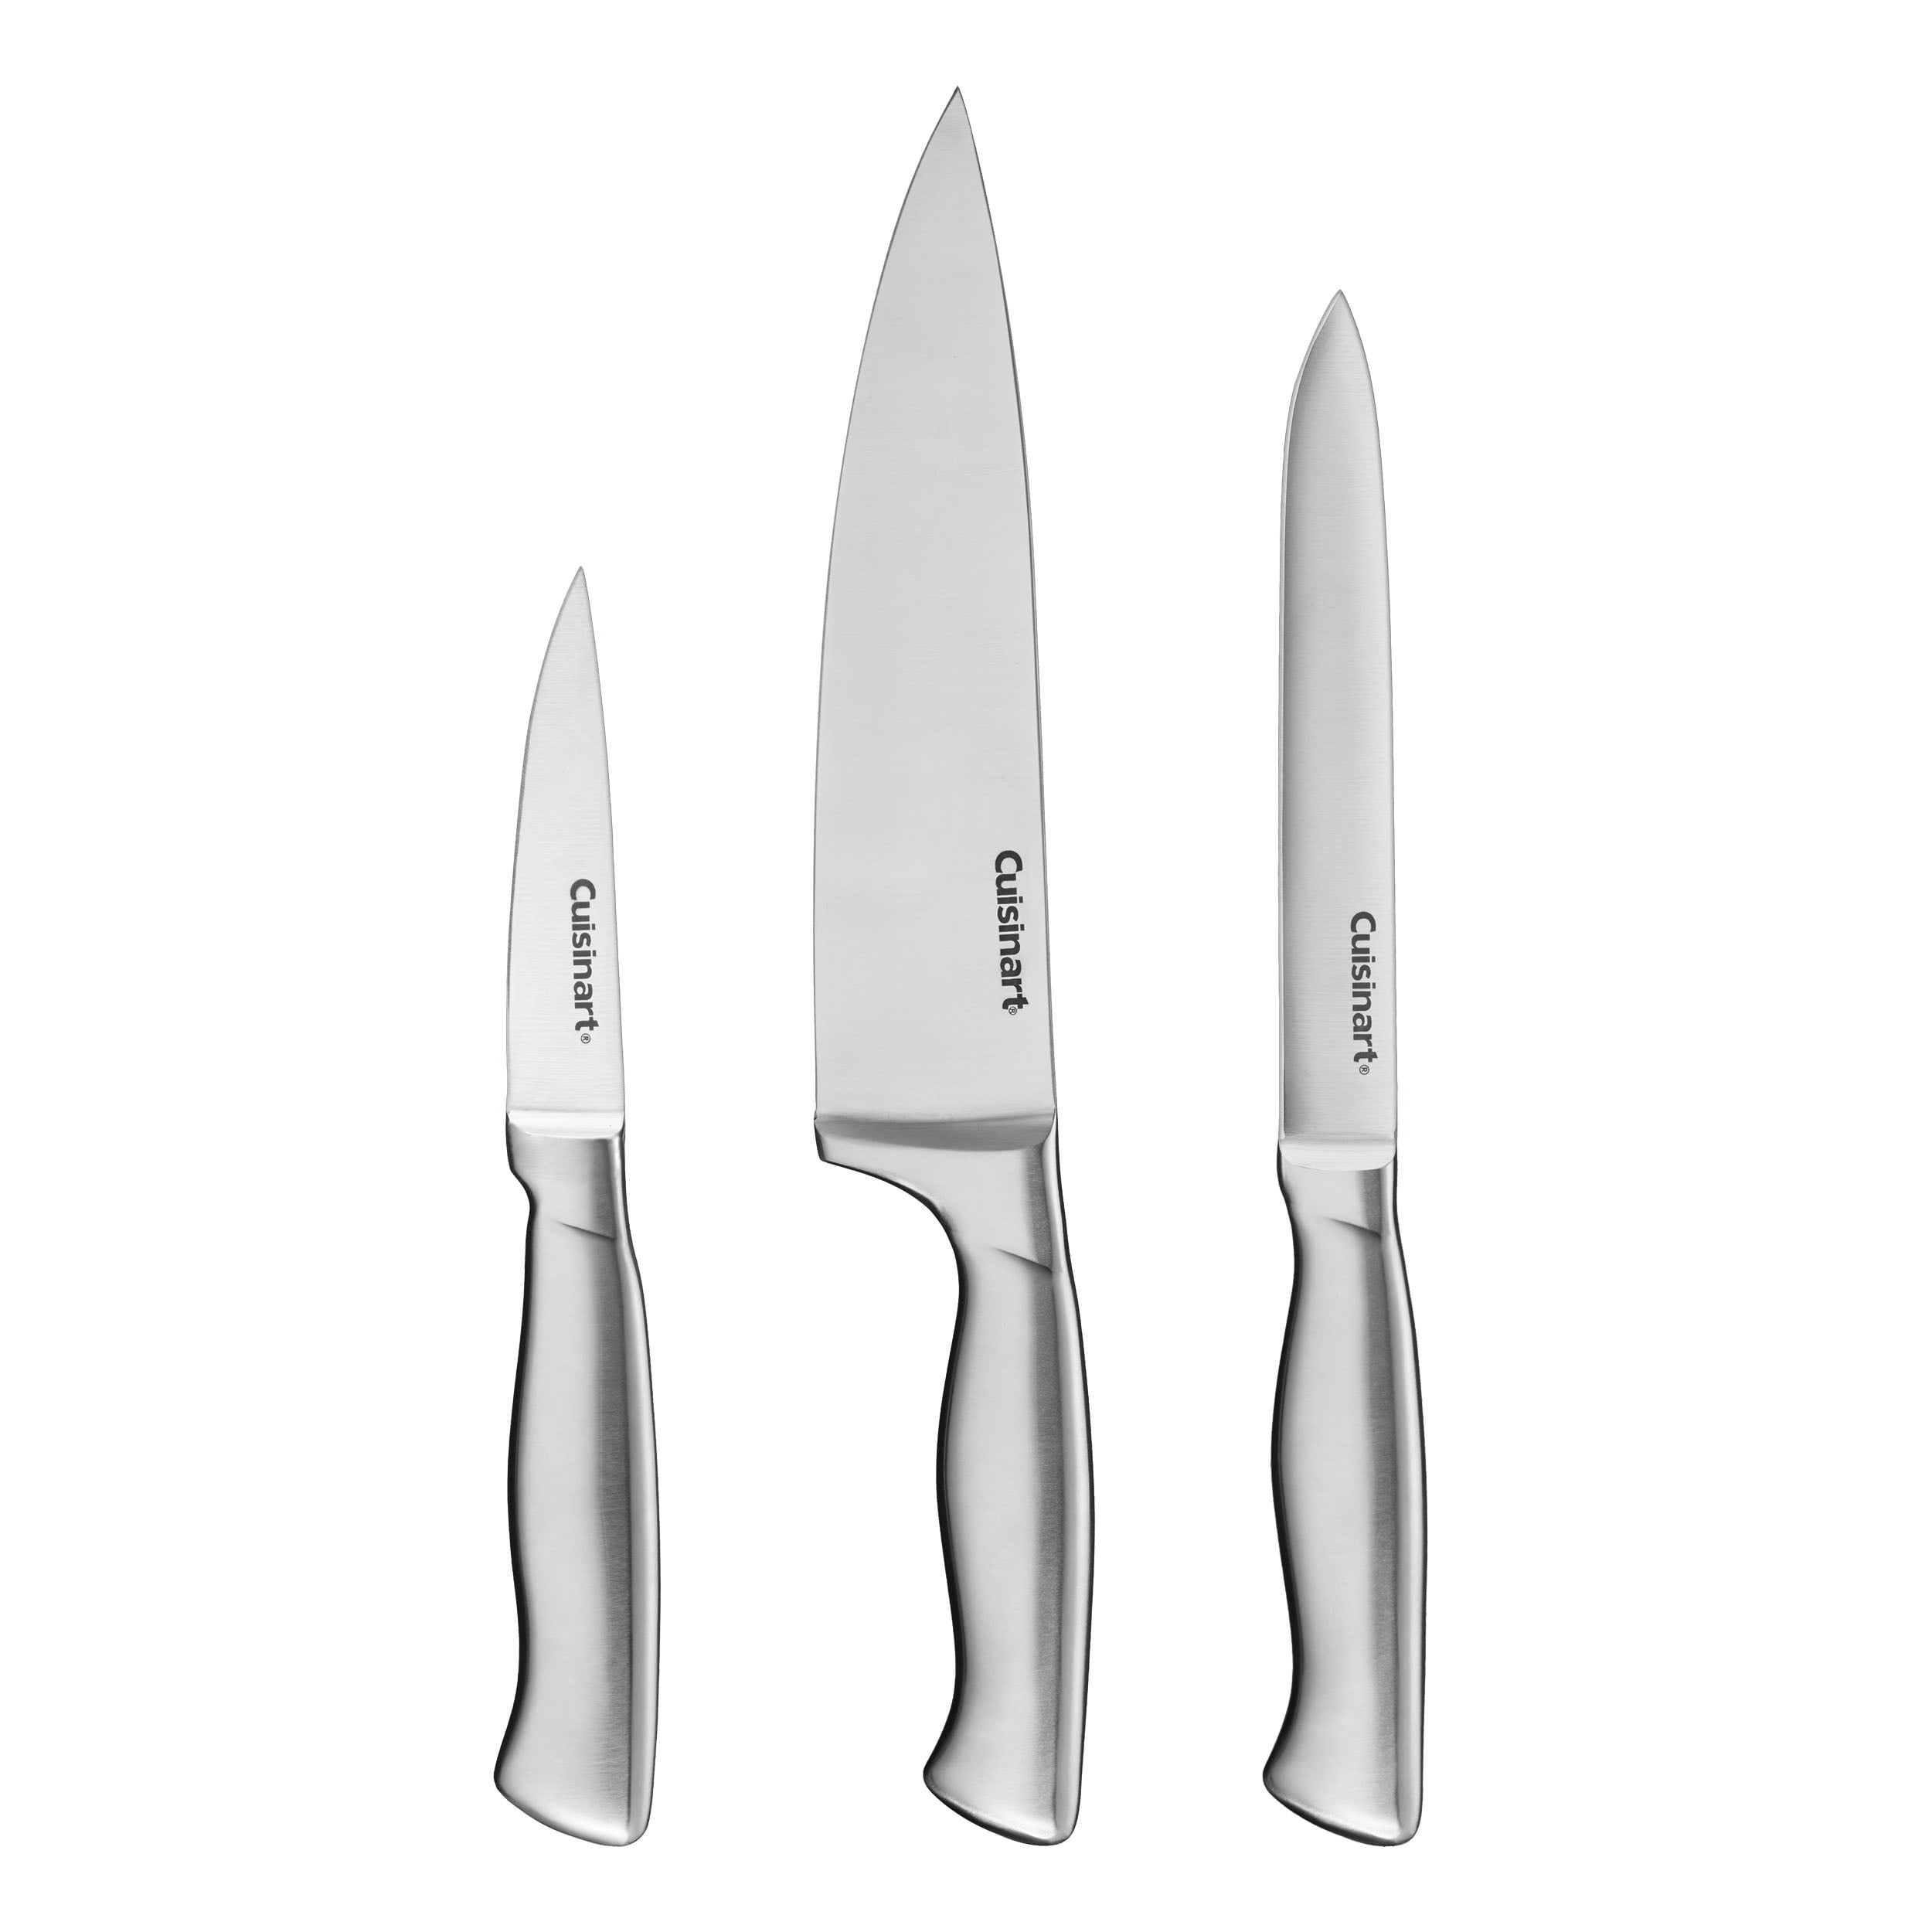 Cuisinart - 3 Slot Knife SHARPENER - Gray - C77SHP-3SGRS